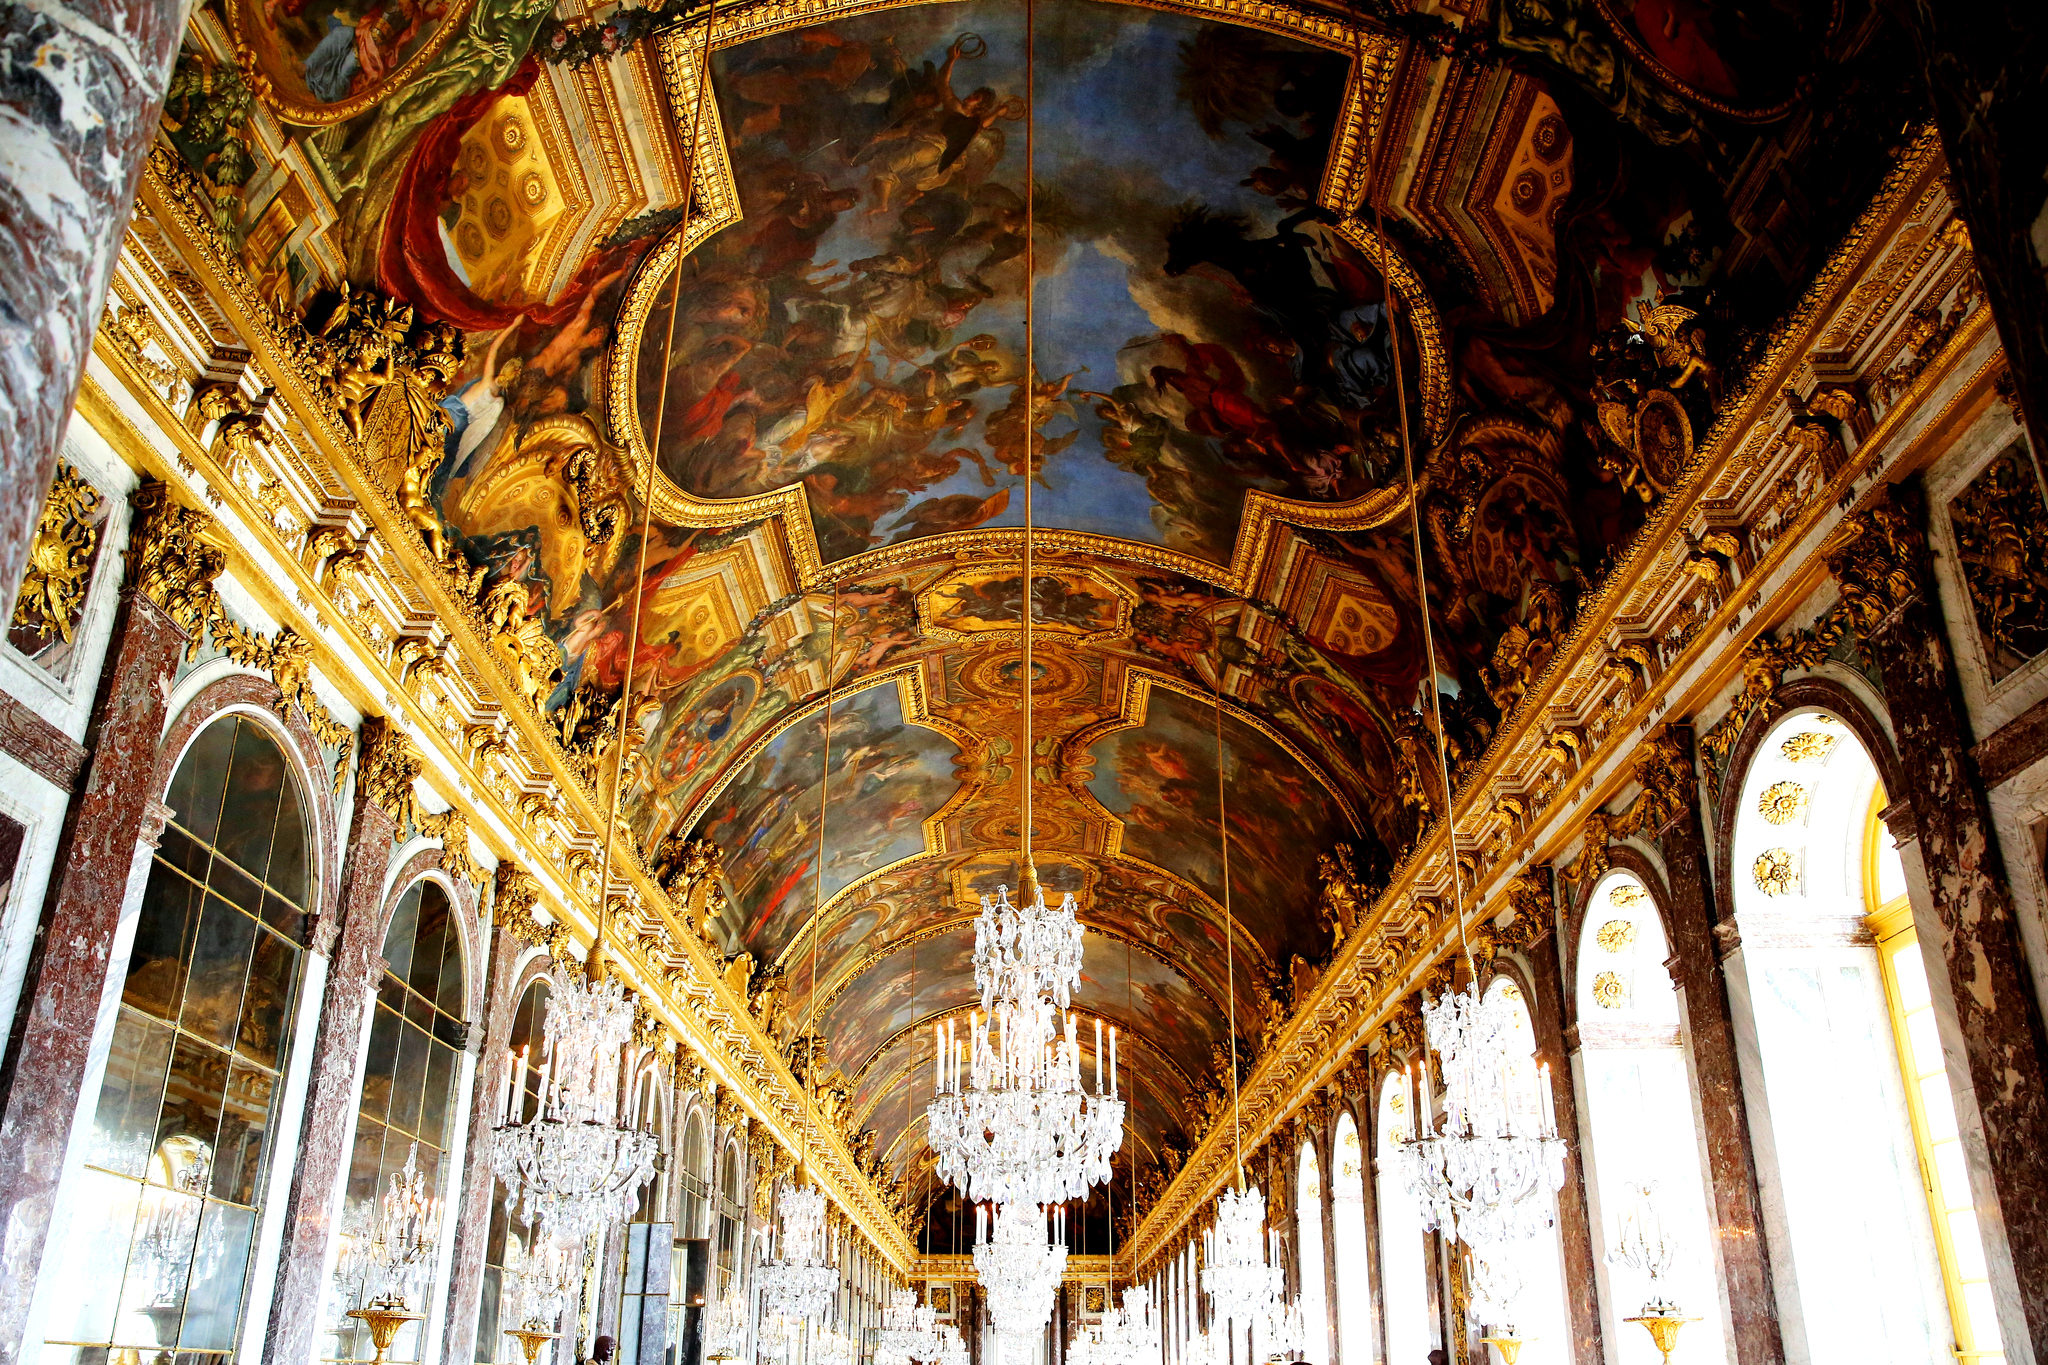 Галереи версаля. Зеркальная галерея Версальского дворца. Франция Версальский дворец внутри. Зеркальный зал Версальского дворца. Зеркальный зал Версальского дворца во Франции.